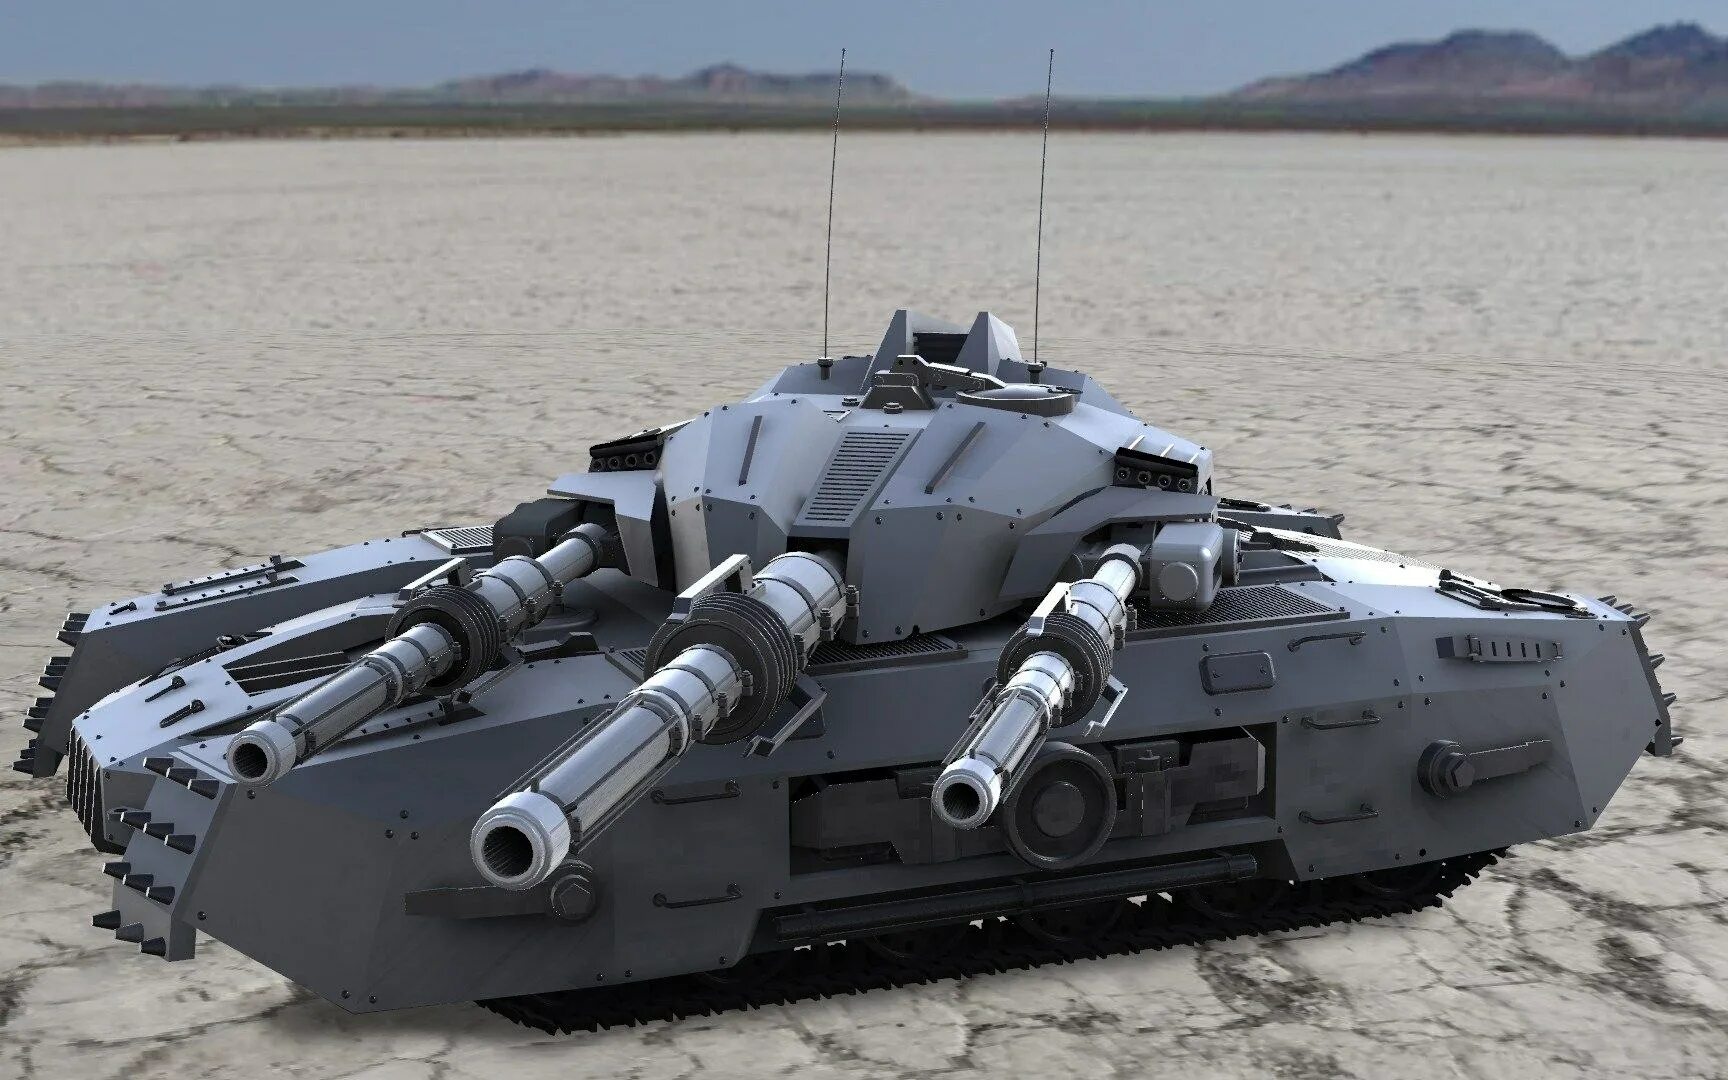 Супертанк боло. Танк будущего. Самый мощный танк. Бронированный танк. Самый сильный танк в мире танков